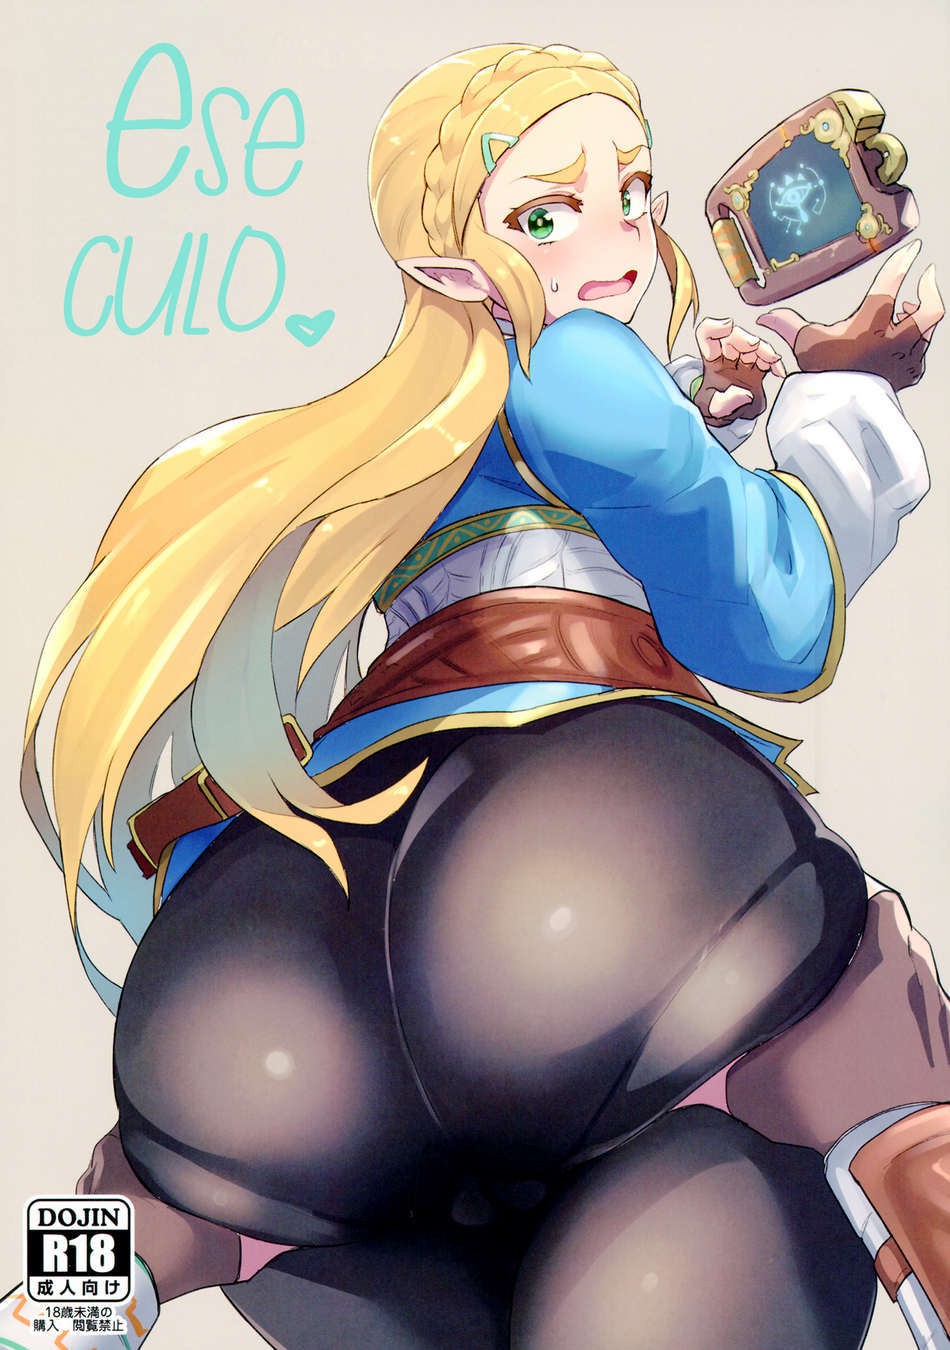 Zelda sex